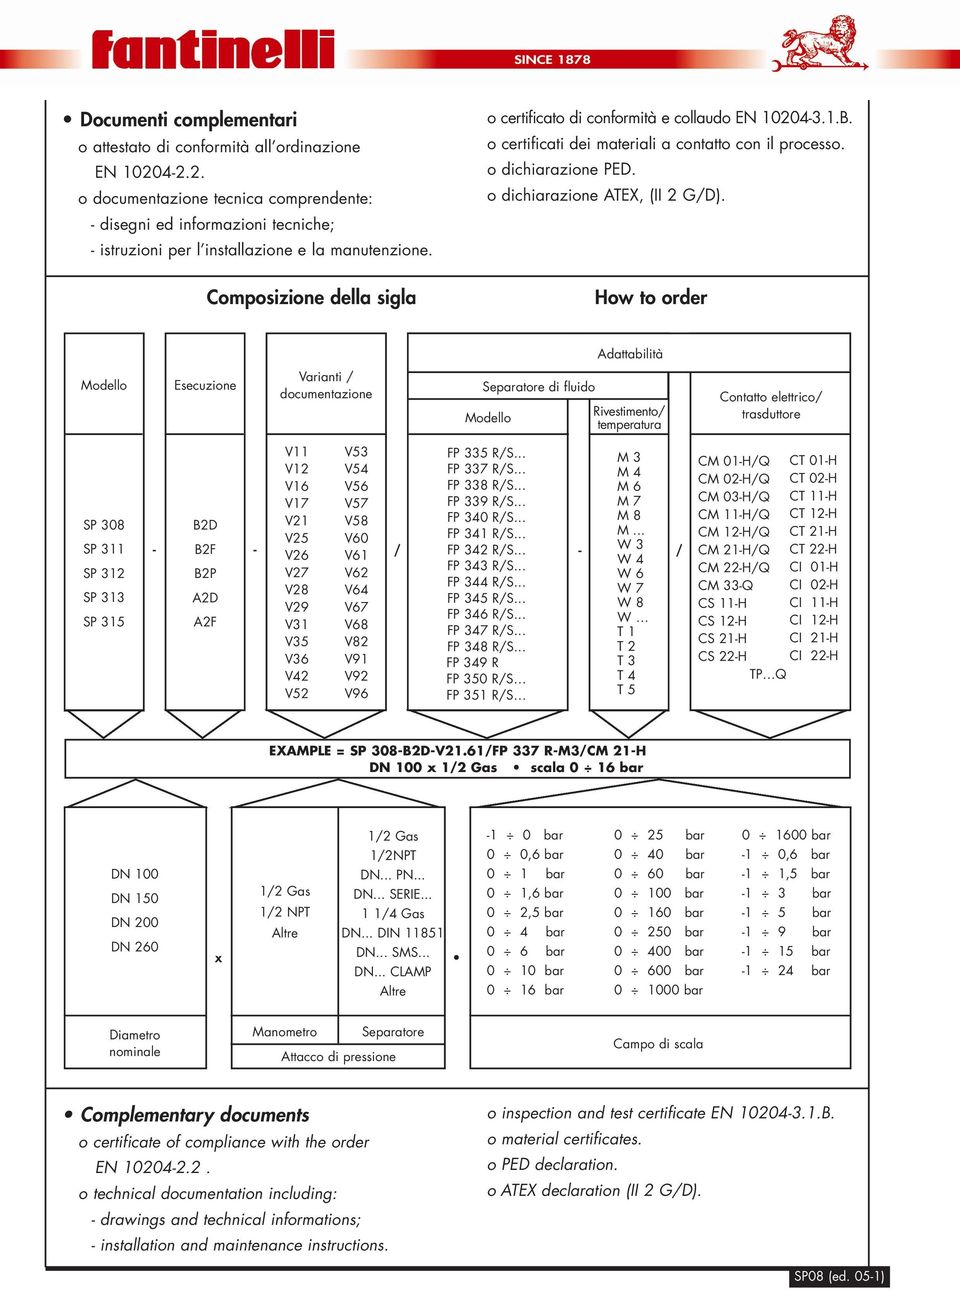 How to order Adattabilità Modello Esecuzione Varianti / documentazione Separatore di fluido Modello Rivestimento/ temperatura Contatto elettrico/ trasduttore SP 308 SP 311 SP 312 SP 313 SP 315 V11